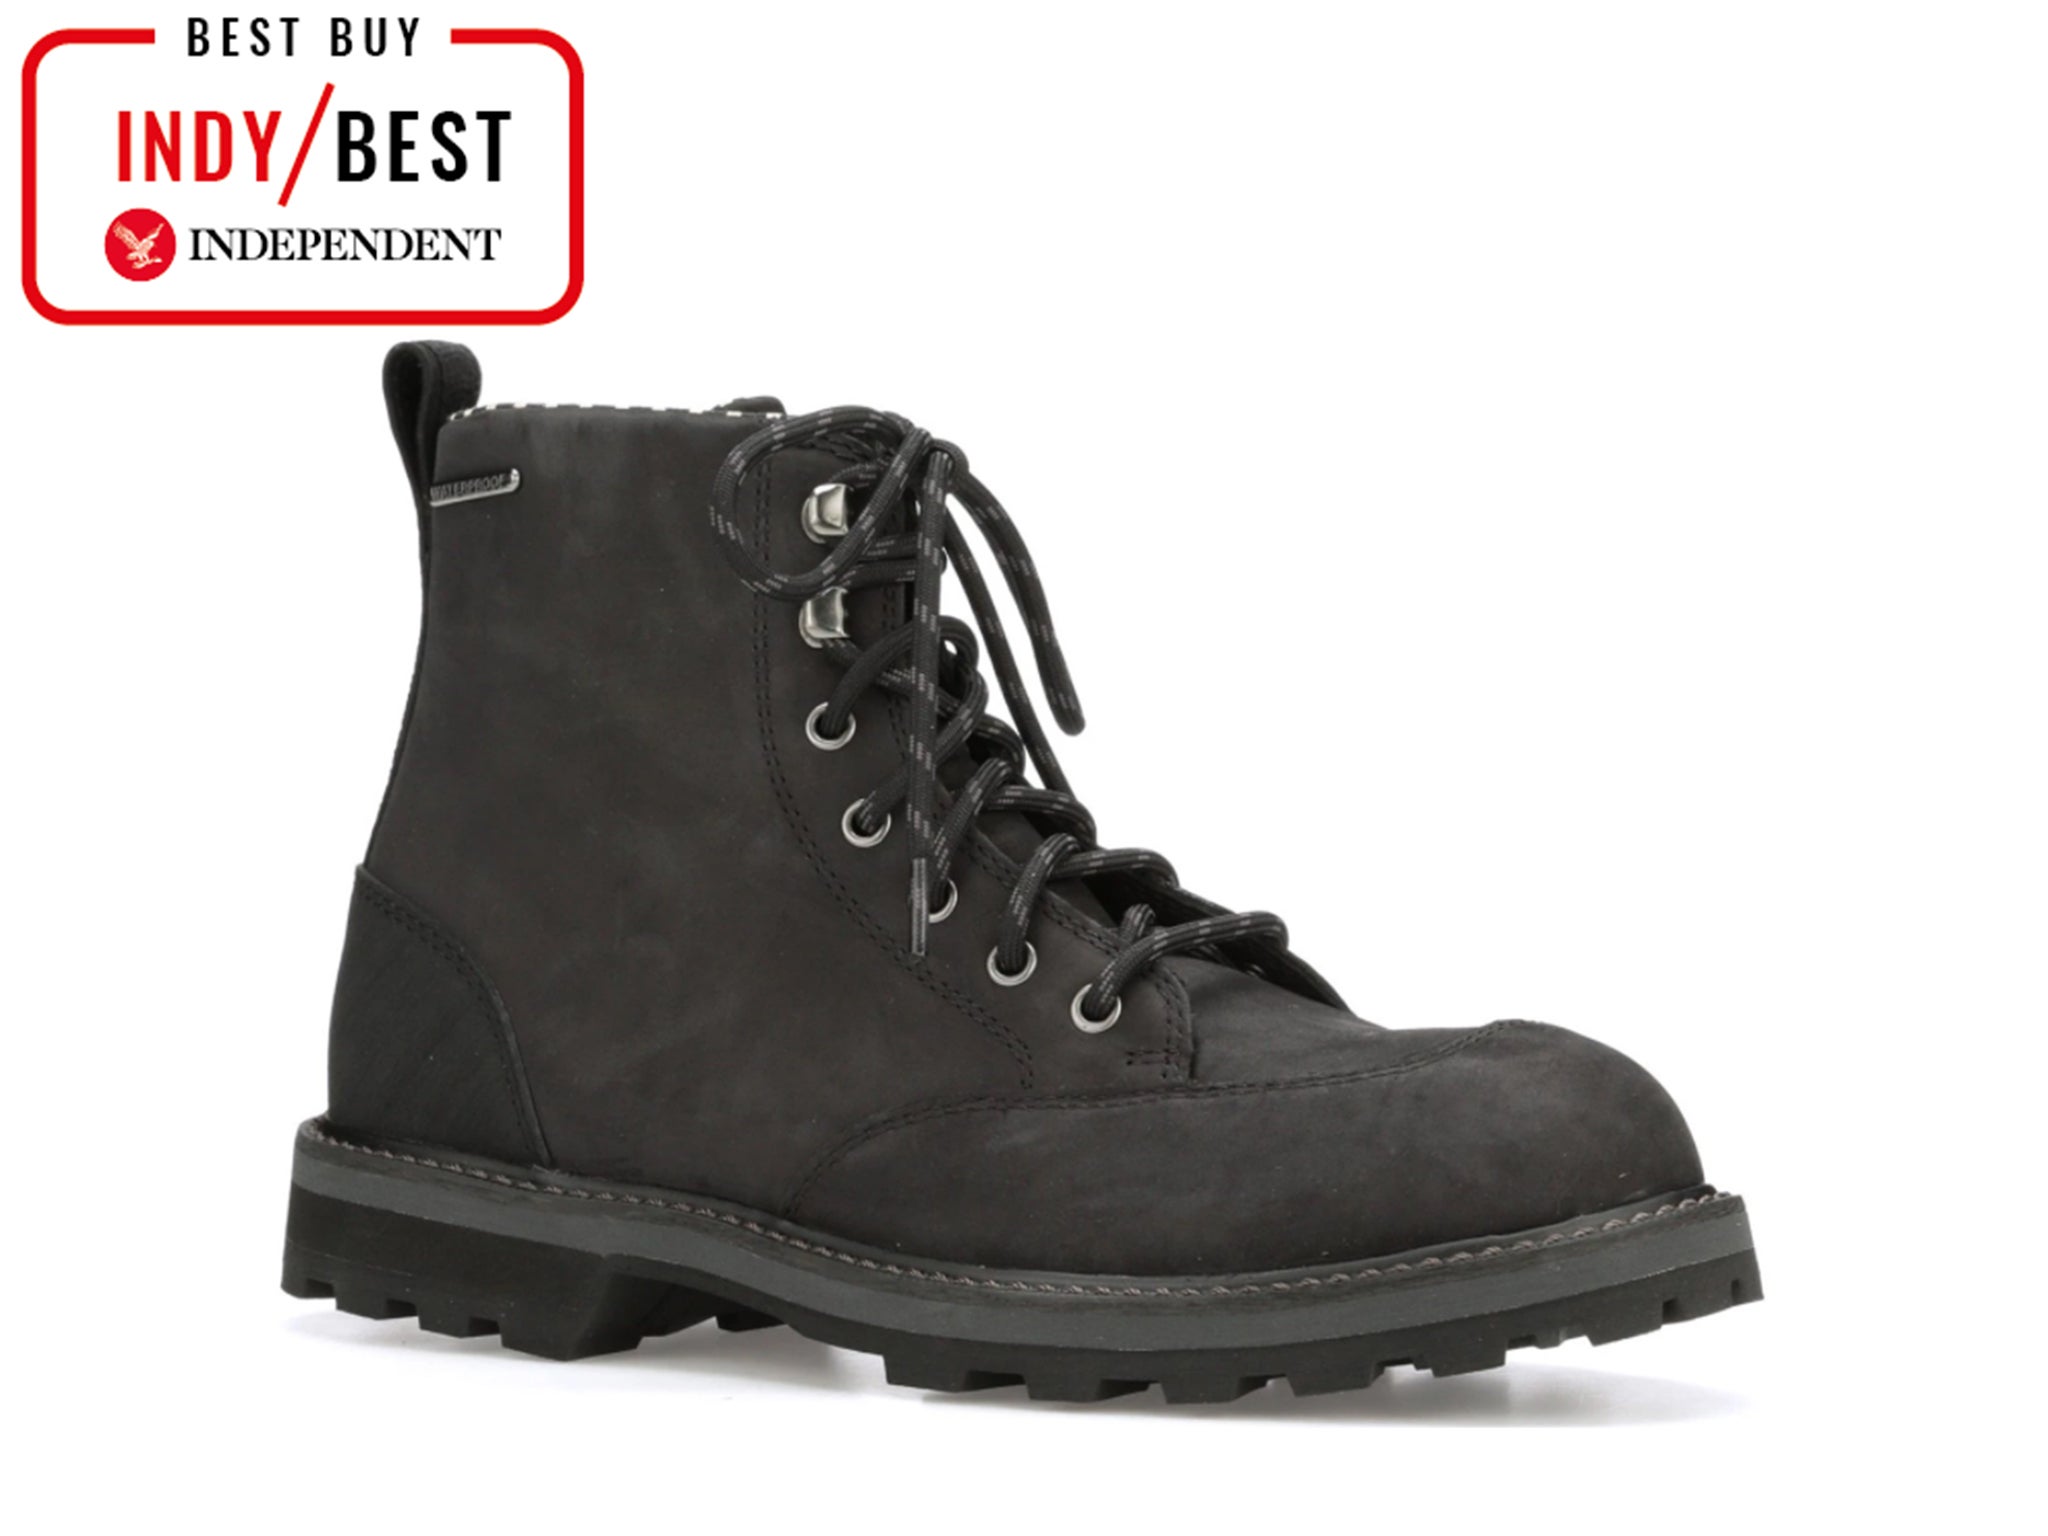 waterproof stylish boots